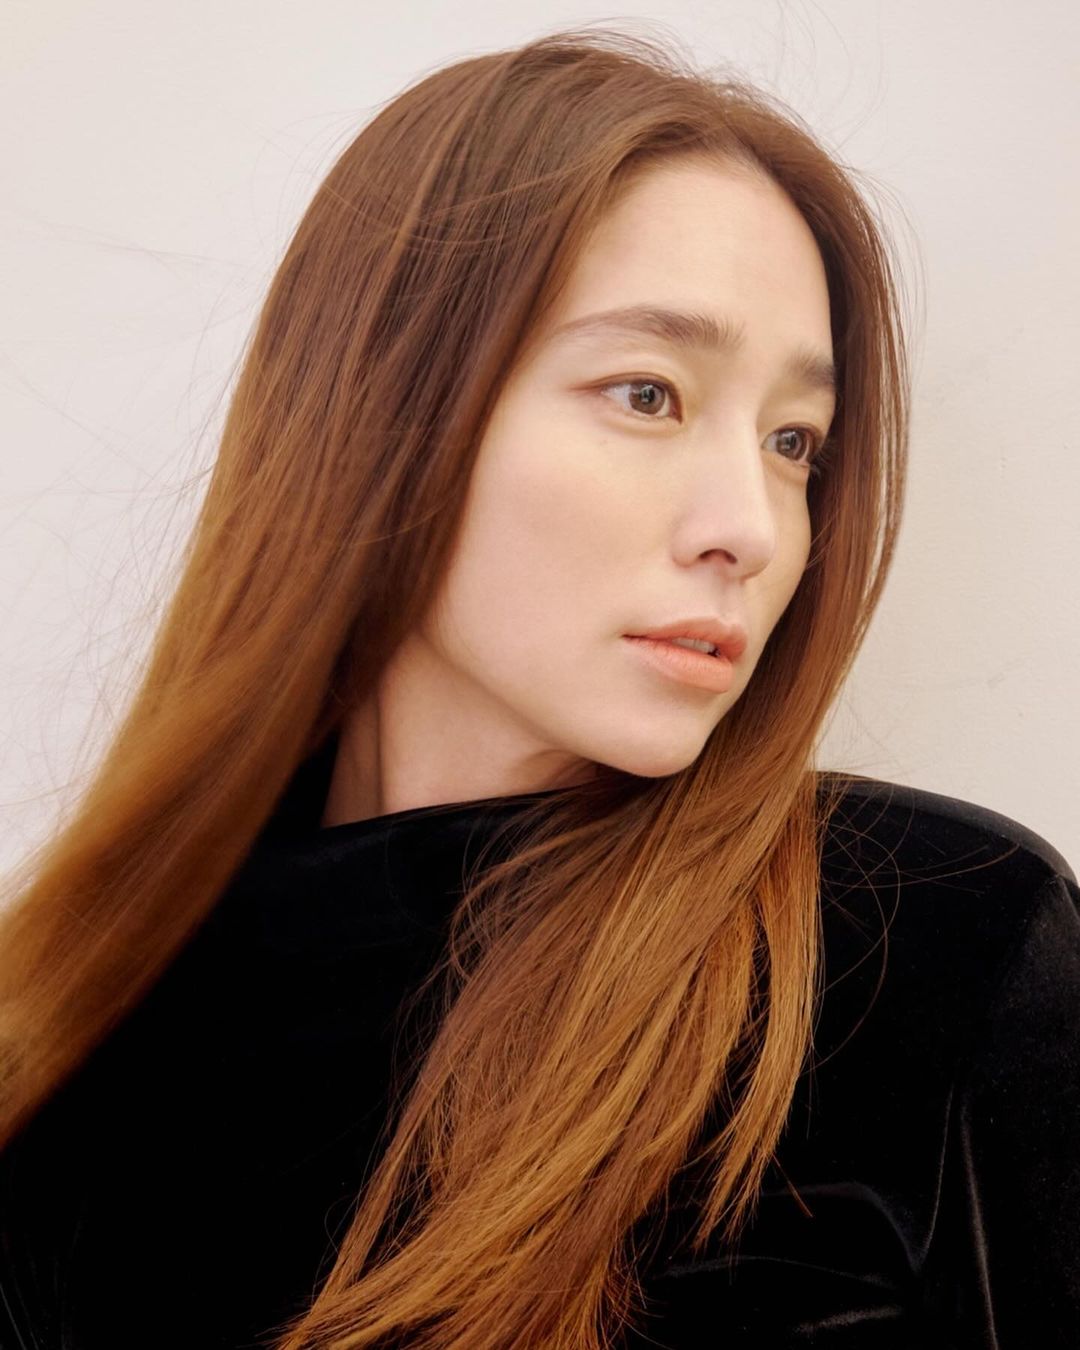 Актриса Ли Мин Джон демонстрирует классическую красоту на новых профайл-фото